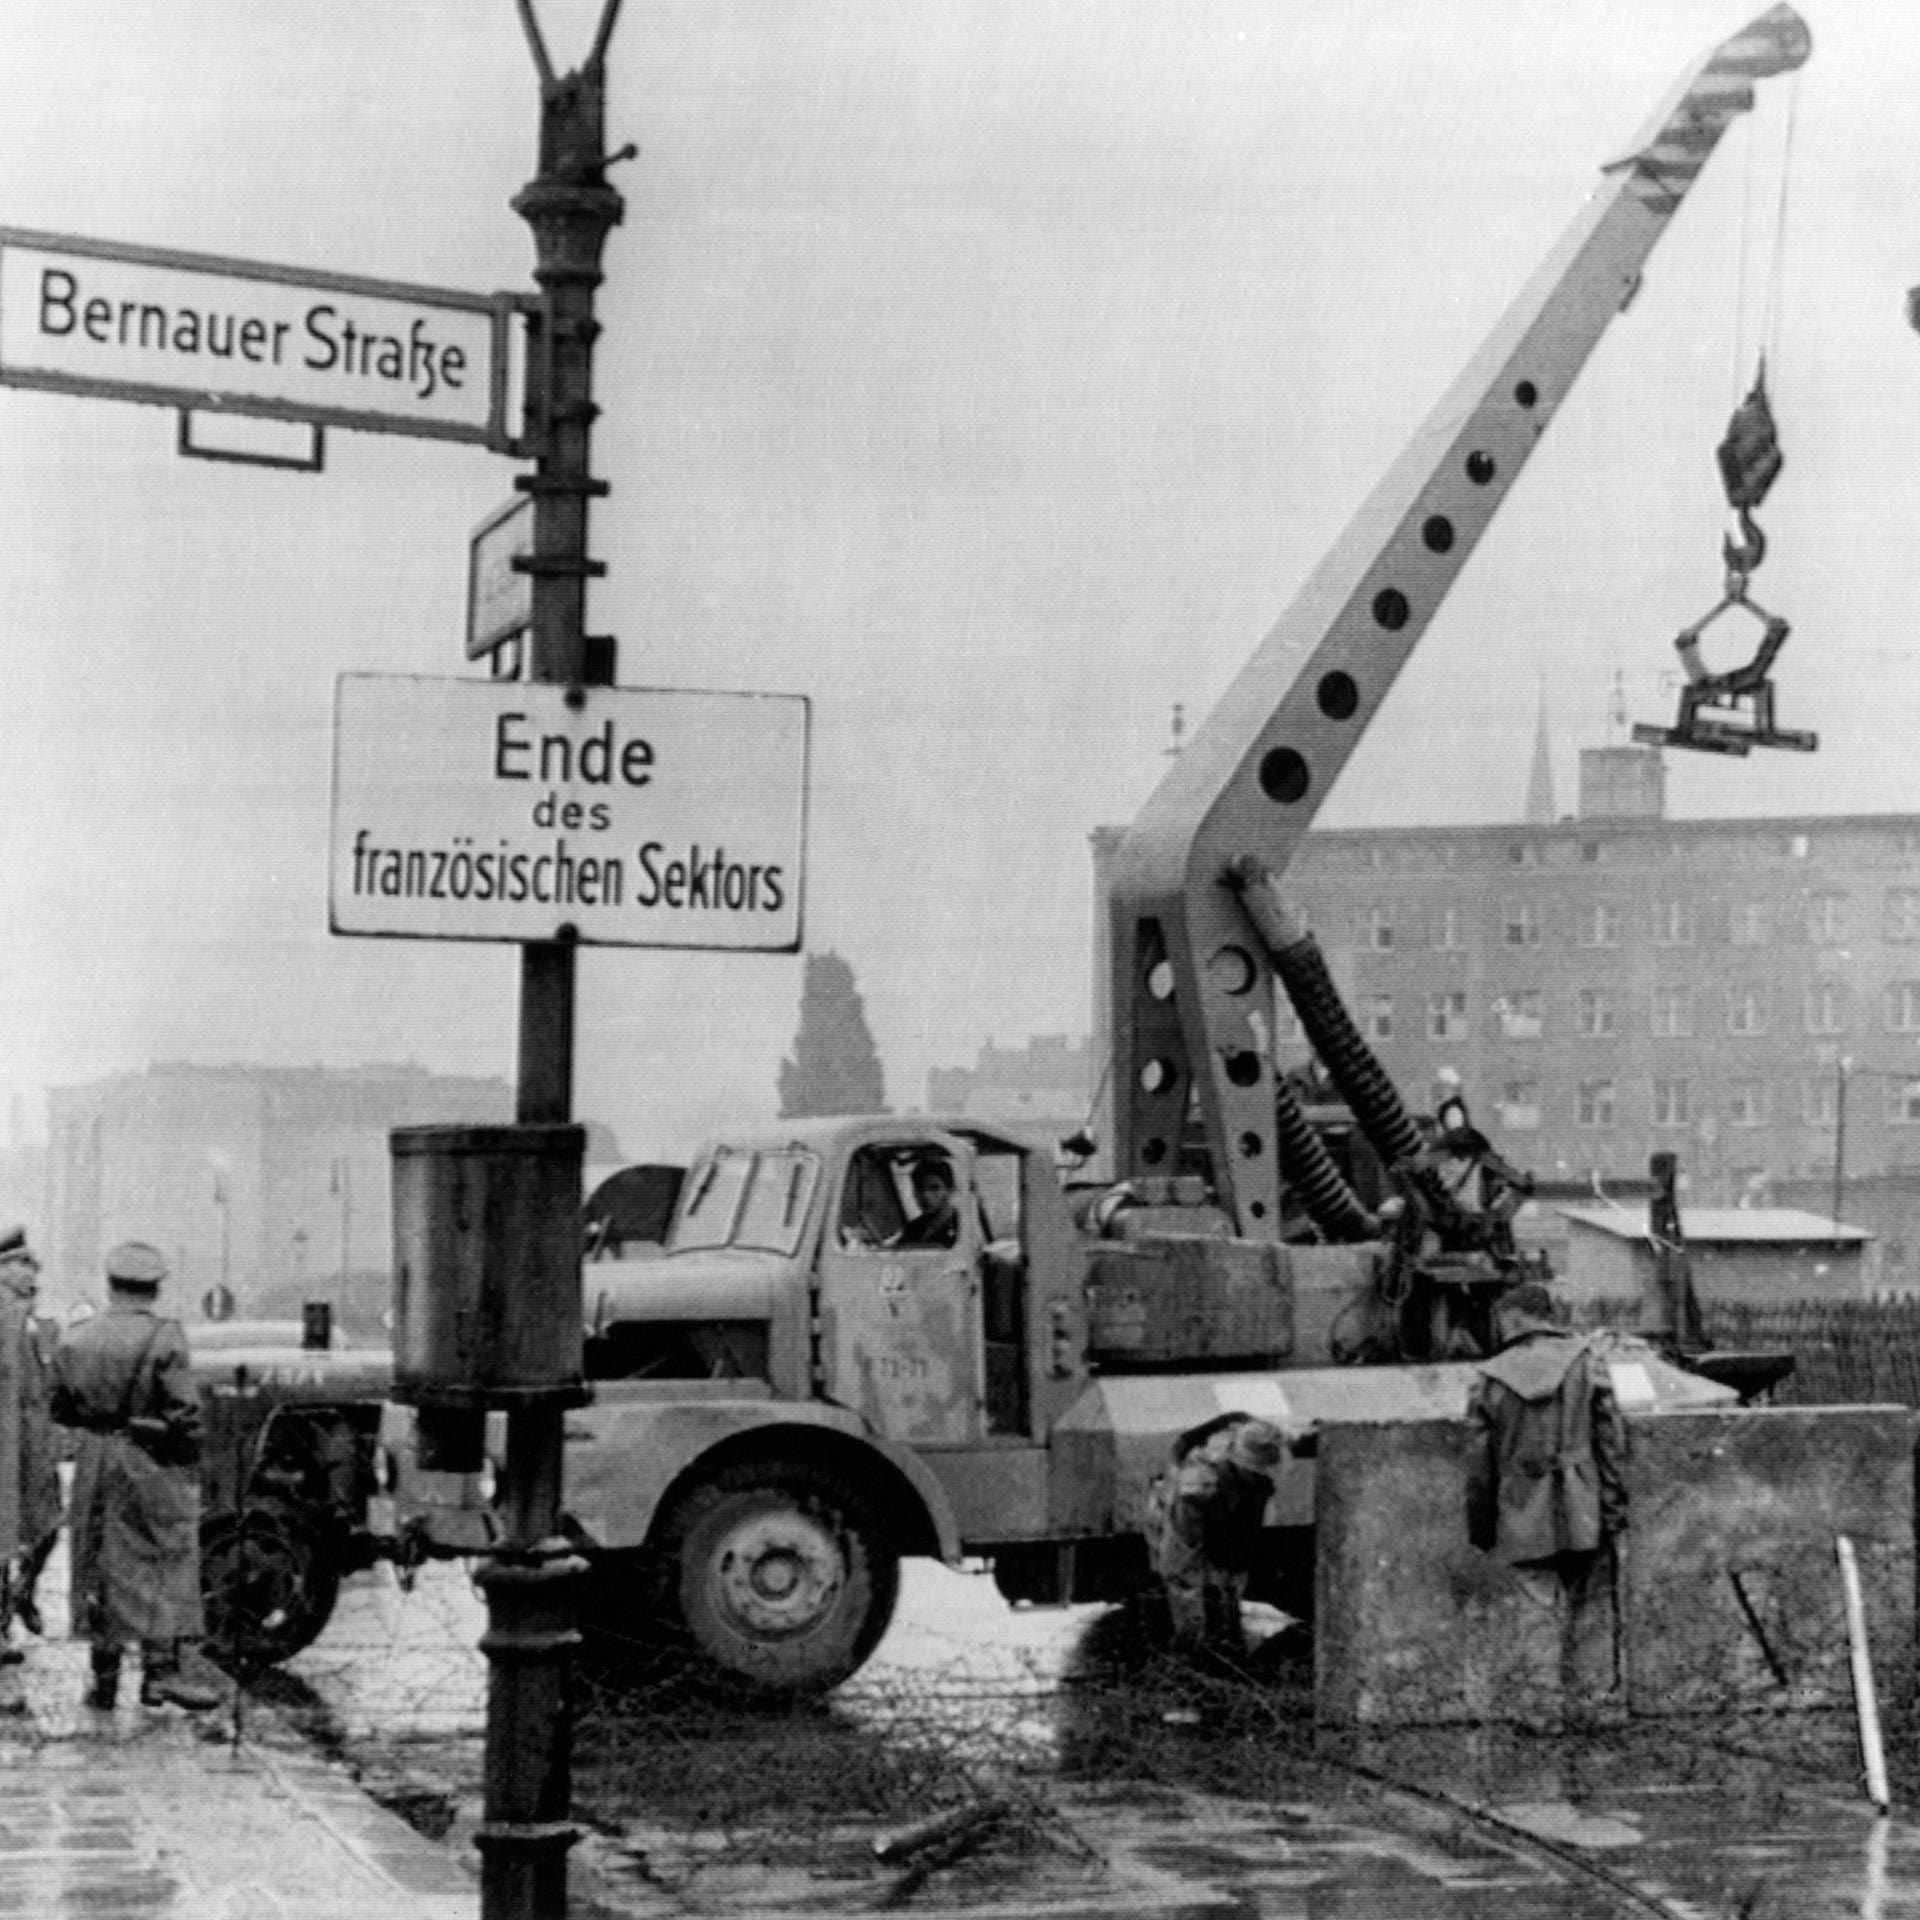 Der Mauerbau 1961 – Eskalation im Kalten Krieg | Archivradio-Gespräch